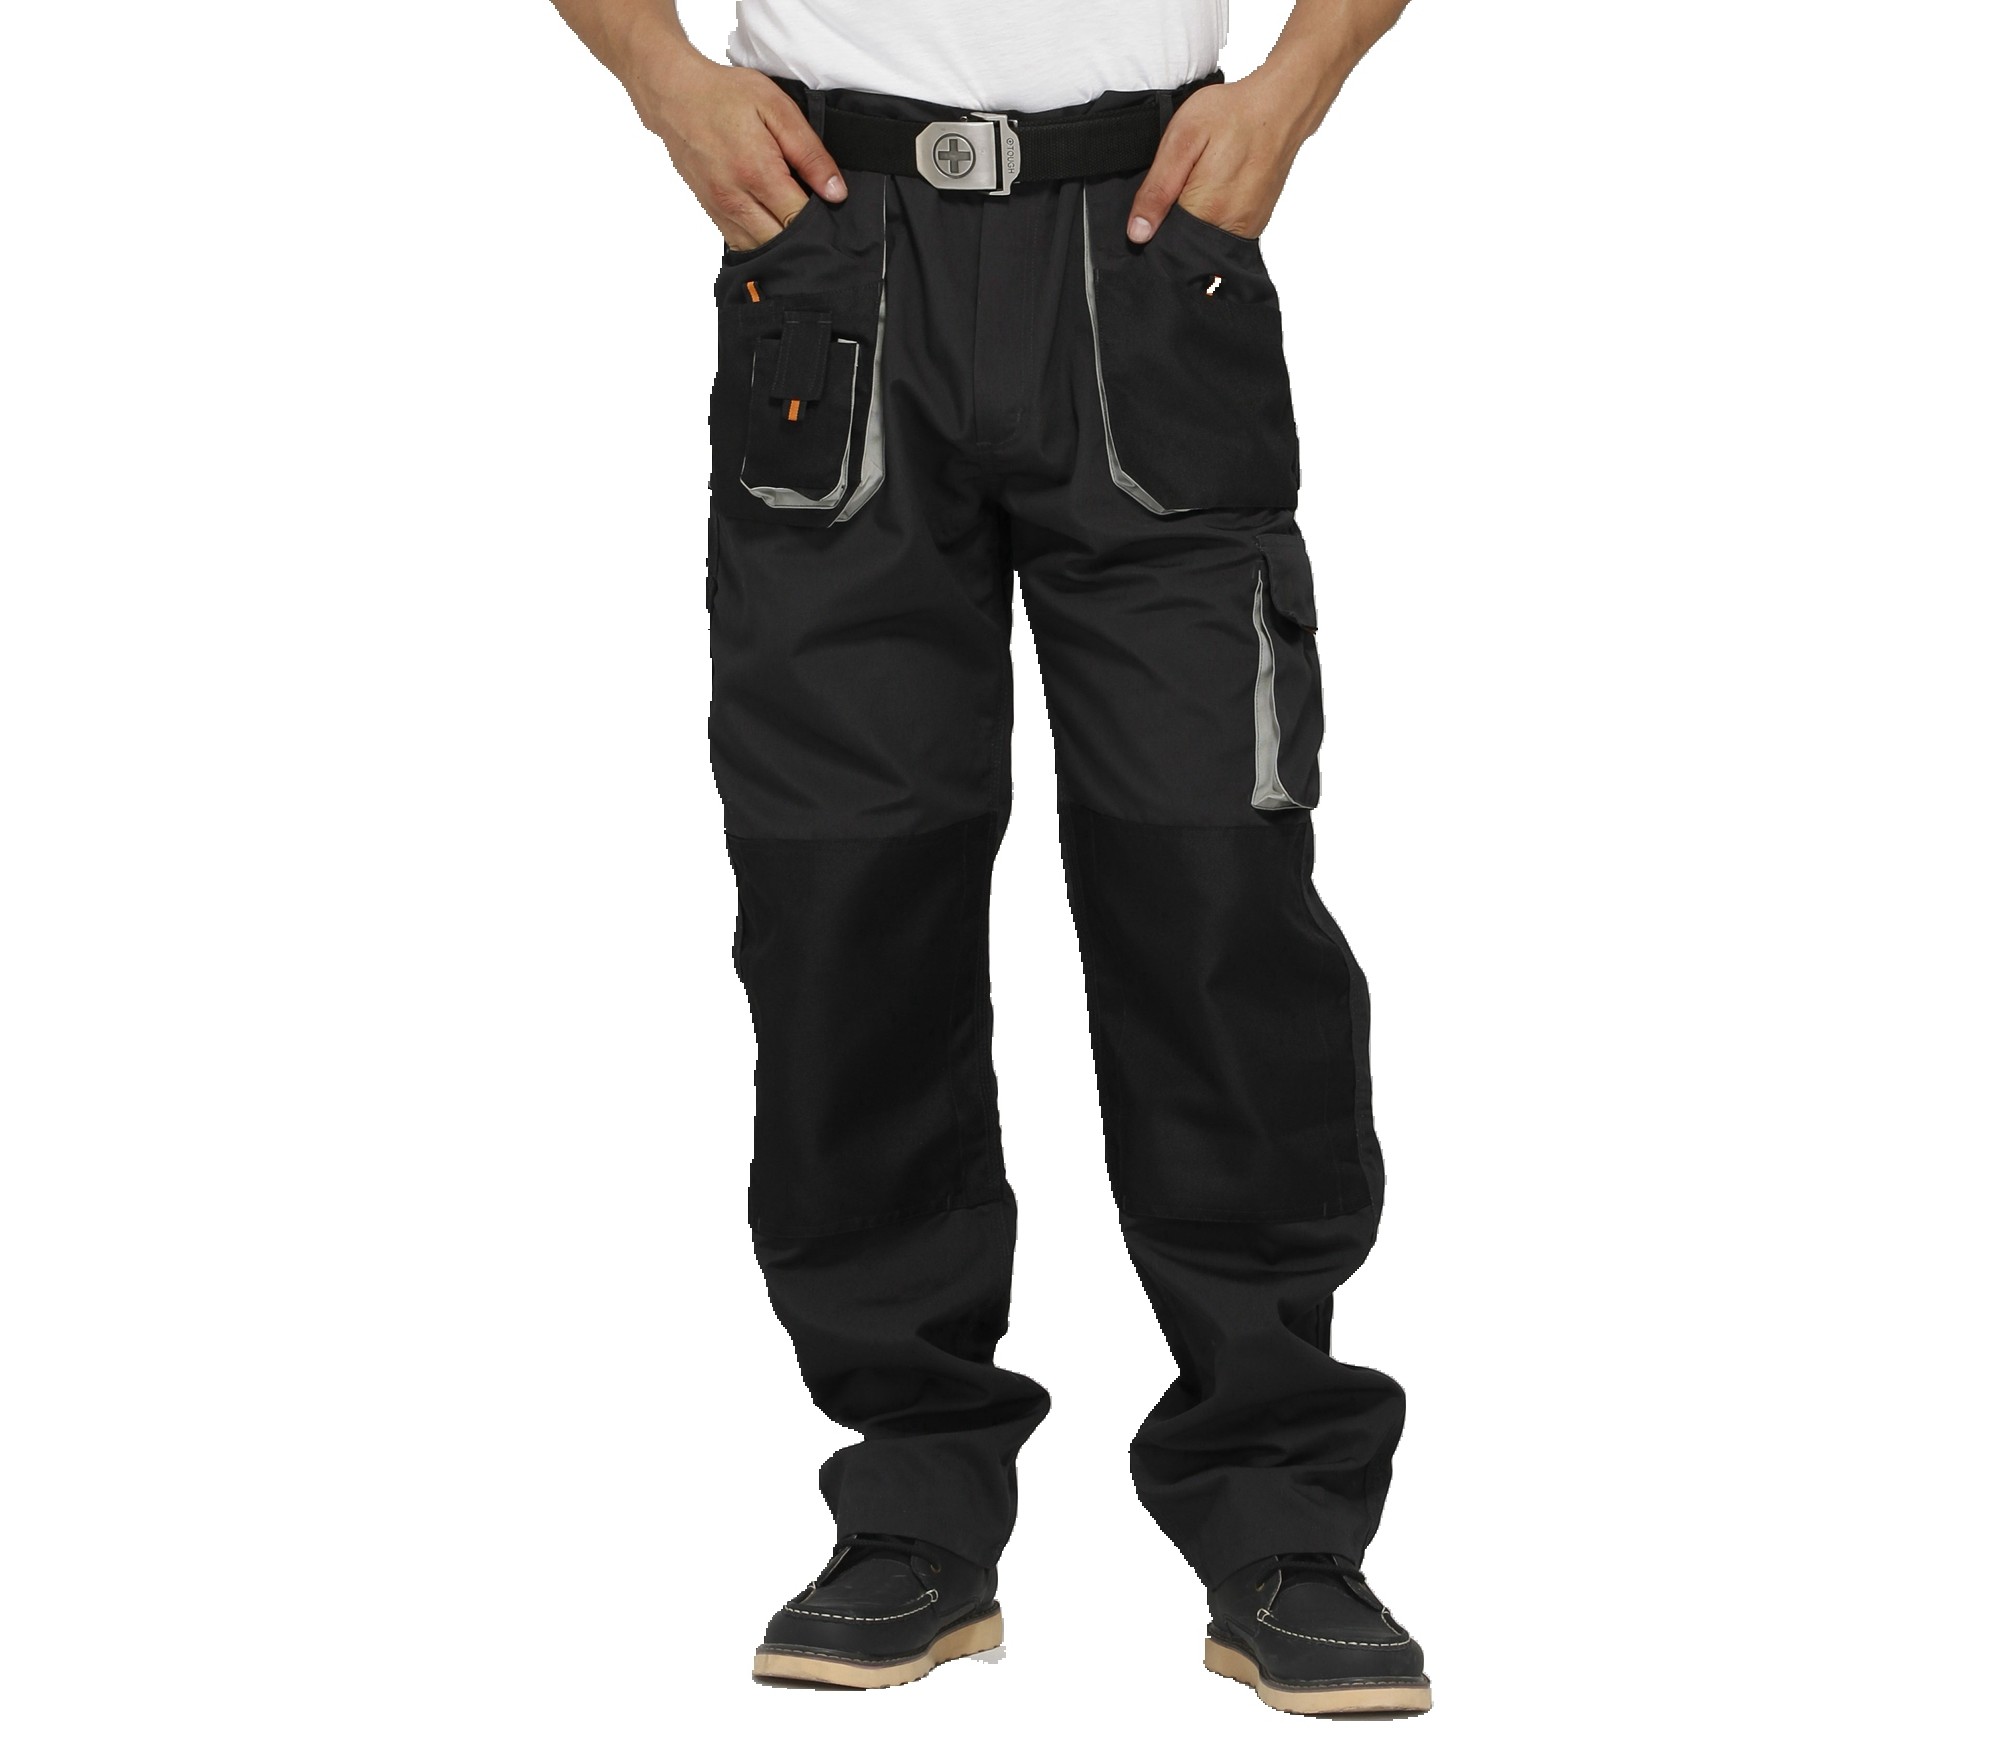 Spodnie Funtional Work Uniform, trwałe dla przemysłu lub robotników budowlanych